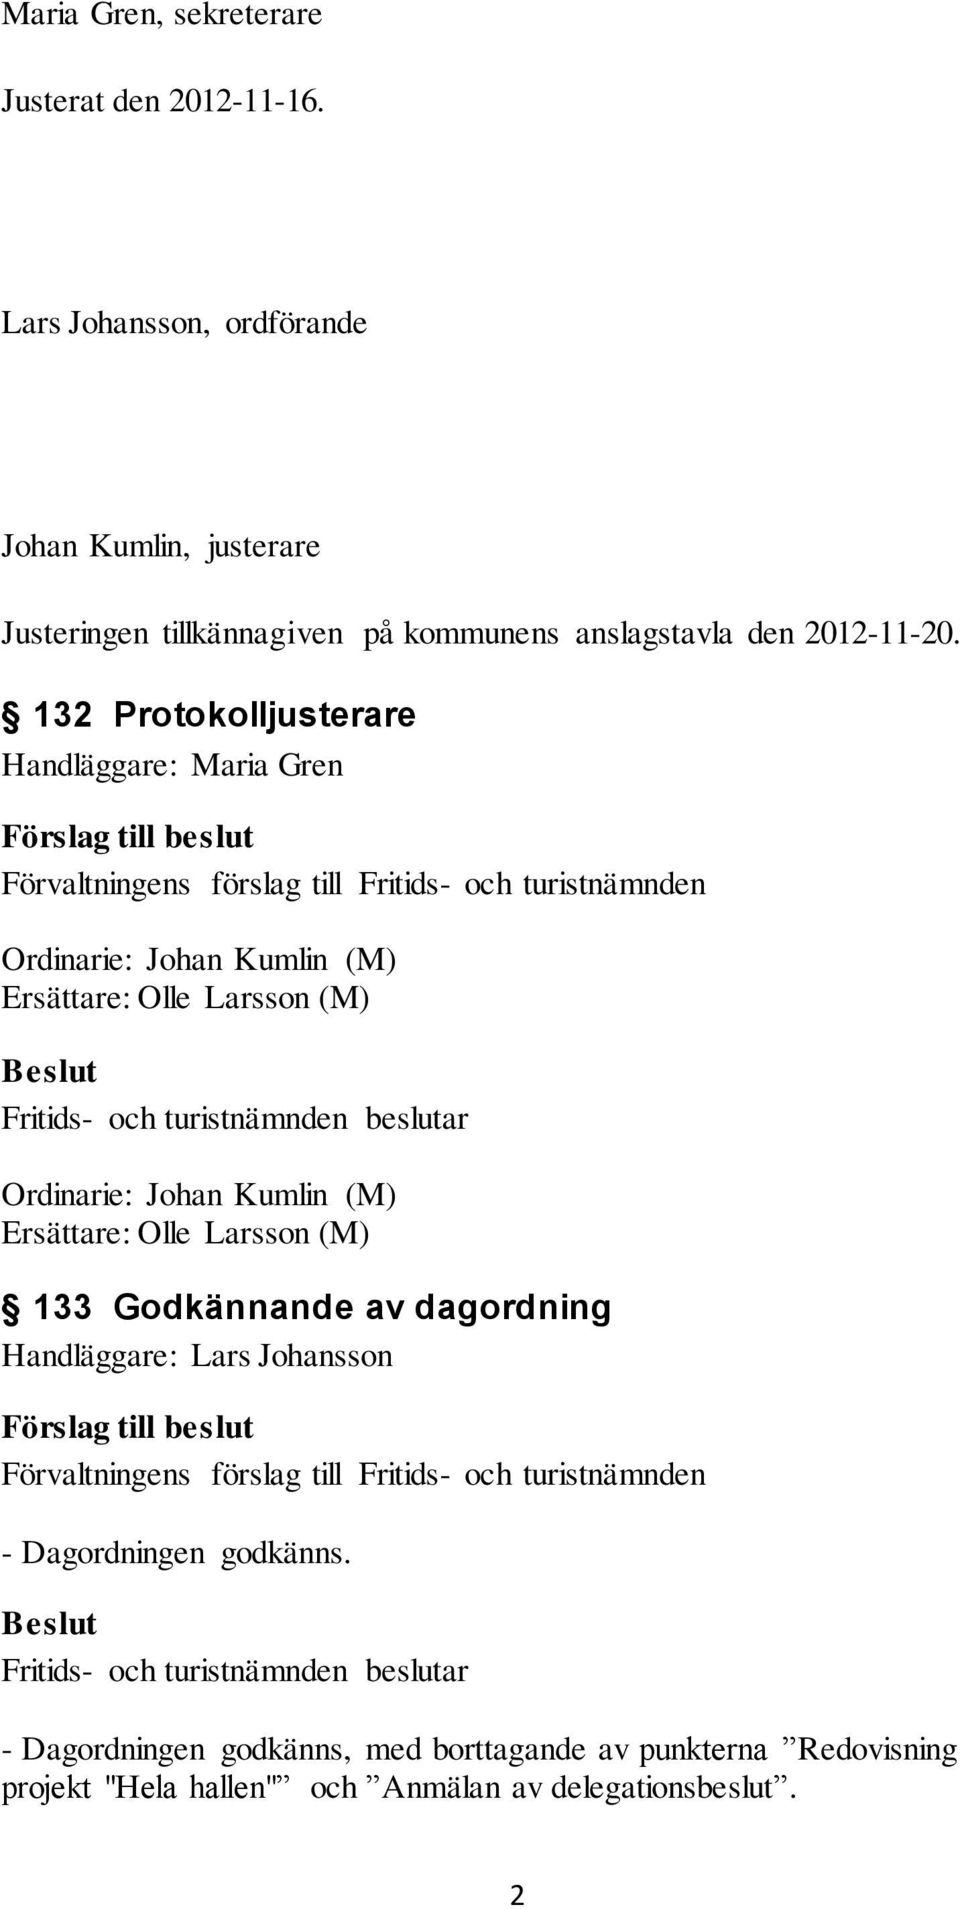 132 Protokolljusterare Handläggare: Maria Gren Ordinarie: Johan Kumlin (M) Ersättare: Olle Larsson (M) Ordinarie: Johan Kumlin (M)